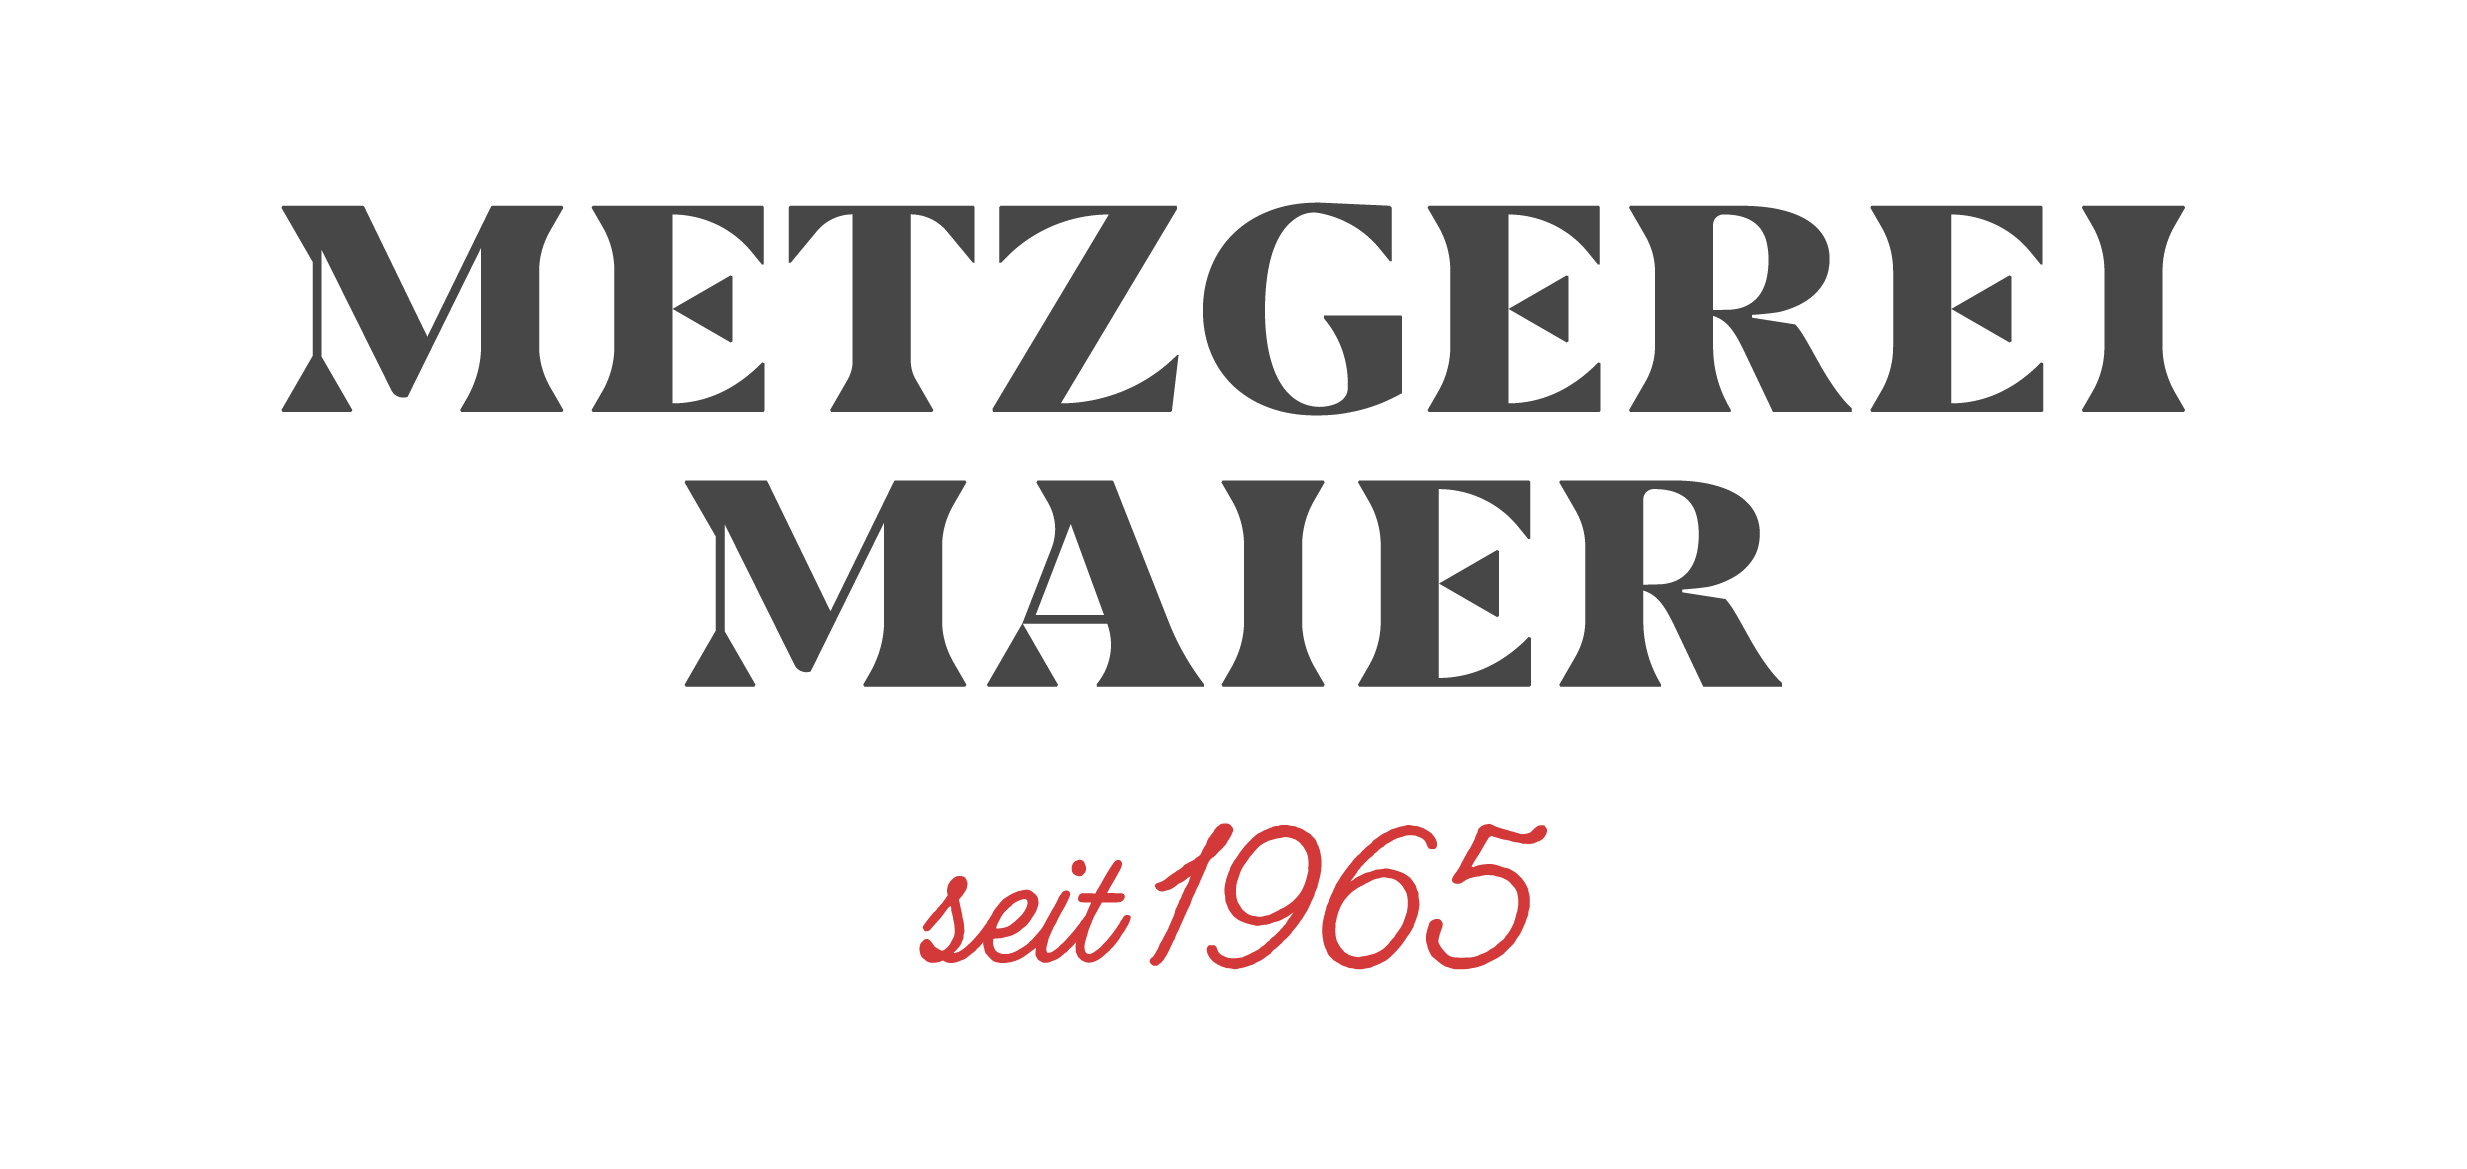 Metzgerei Maier